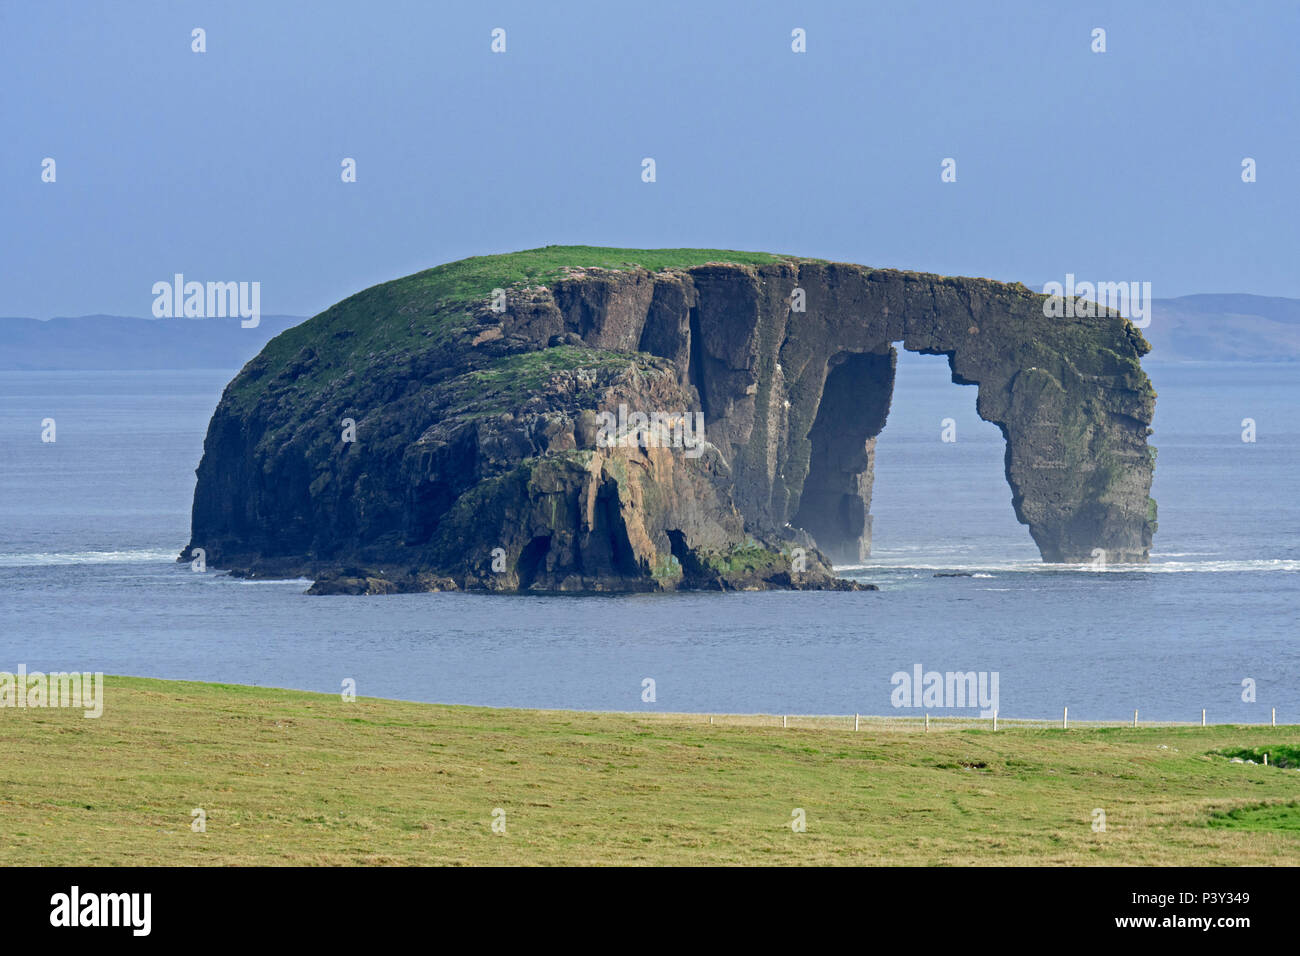 Dore Holm, petite île à l'arche naturelle de la côte de Stenness, Esha Ness / Eshaness sur Mainland Shetland, Écosse, Royaume-Uni Banque D'Images